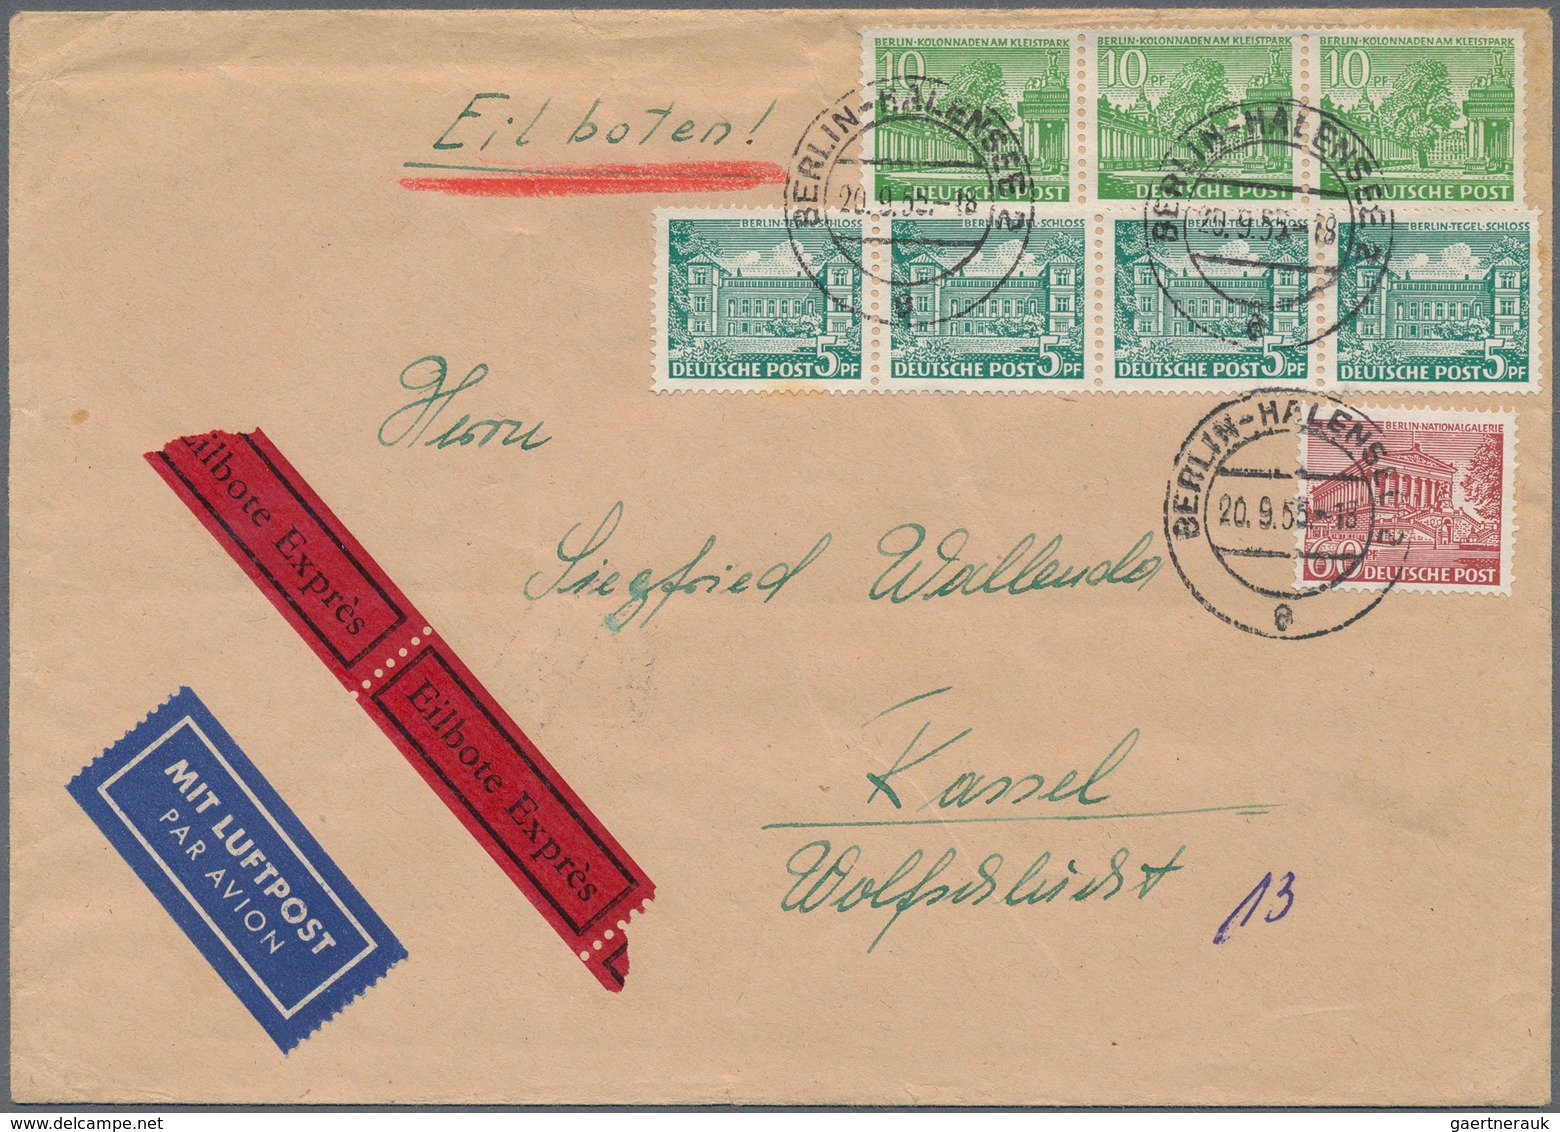 Berlin: 1955: Luftpost-Doppelbrief Inland Mit Eilzustellung ( 40 + 2 X 5 LP, 60 Eil ) Mit 4 X 5, 3 X - Covers & Documents